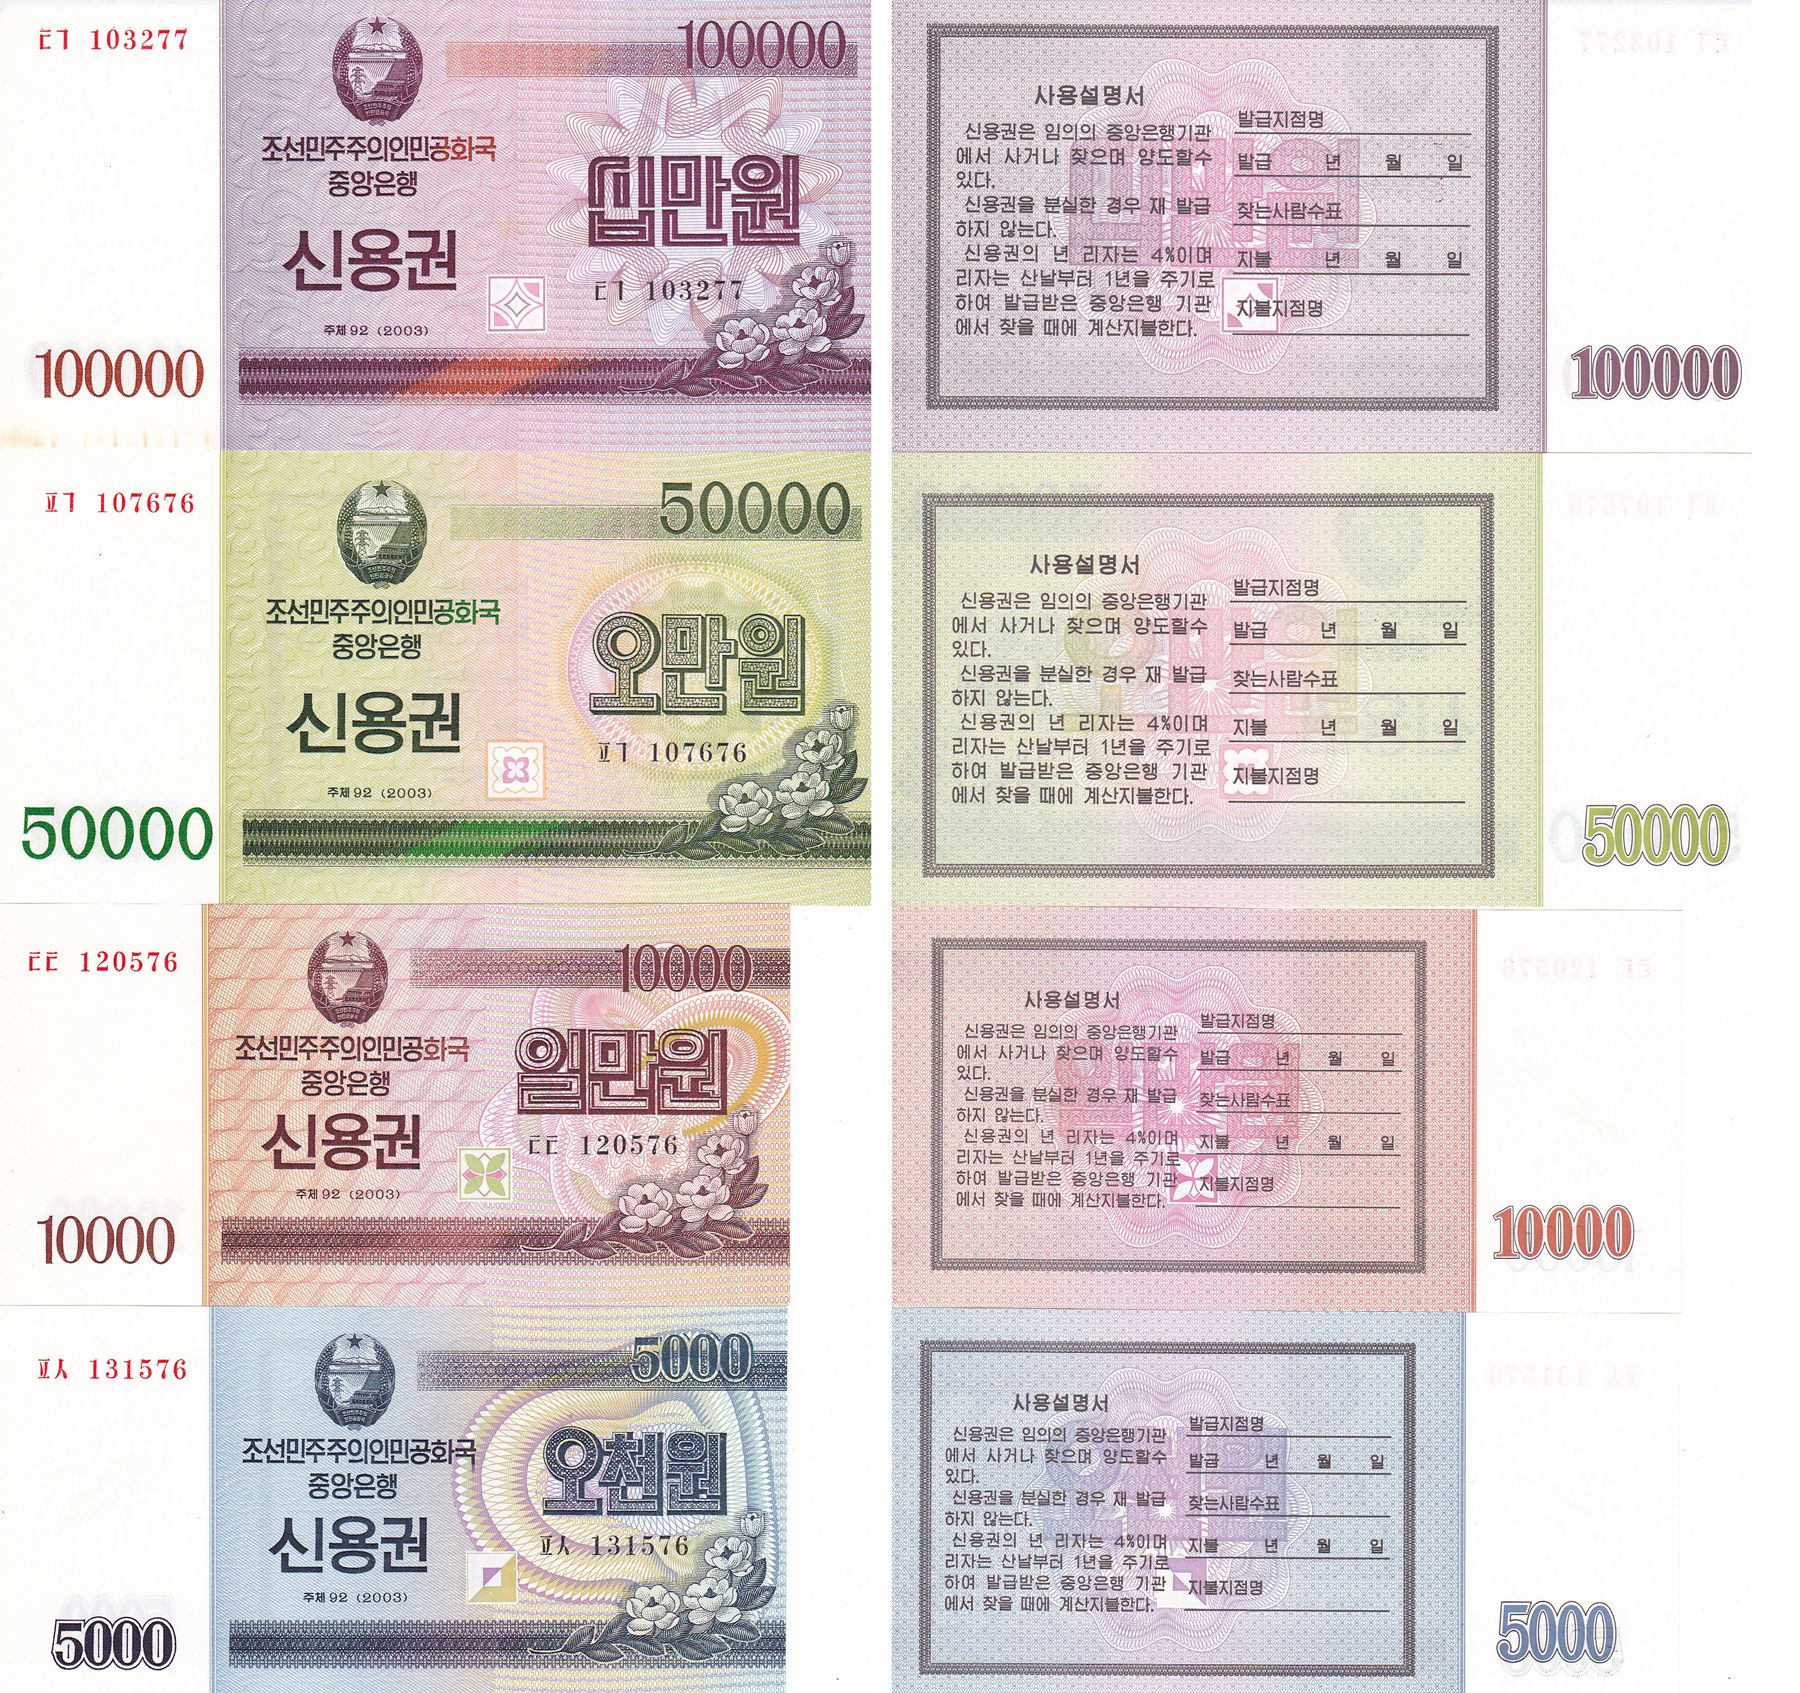 L1250, Korea 4% Cashier's Cheque (Banknotes) 4 Pcs, 2003